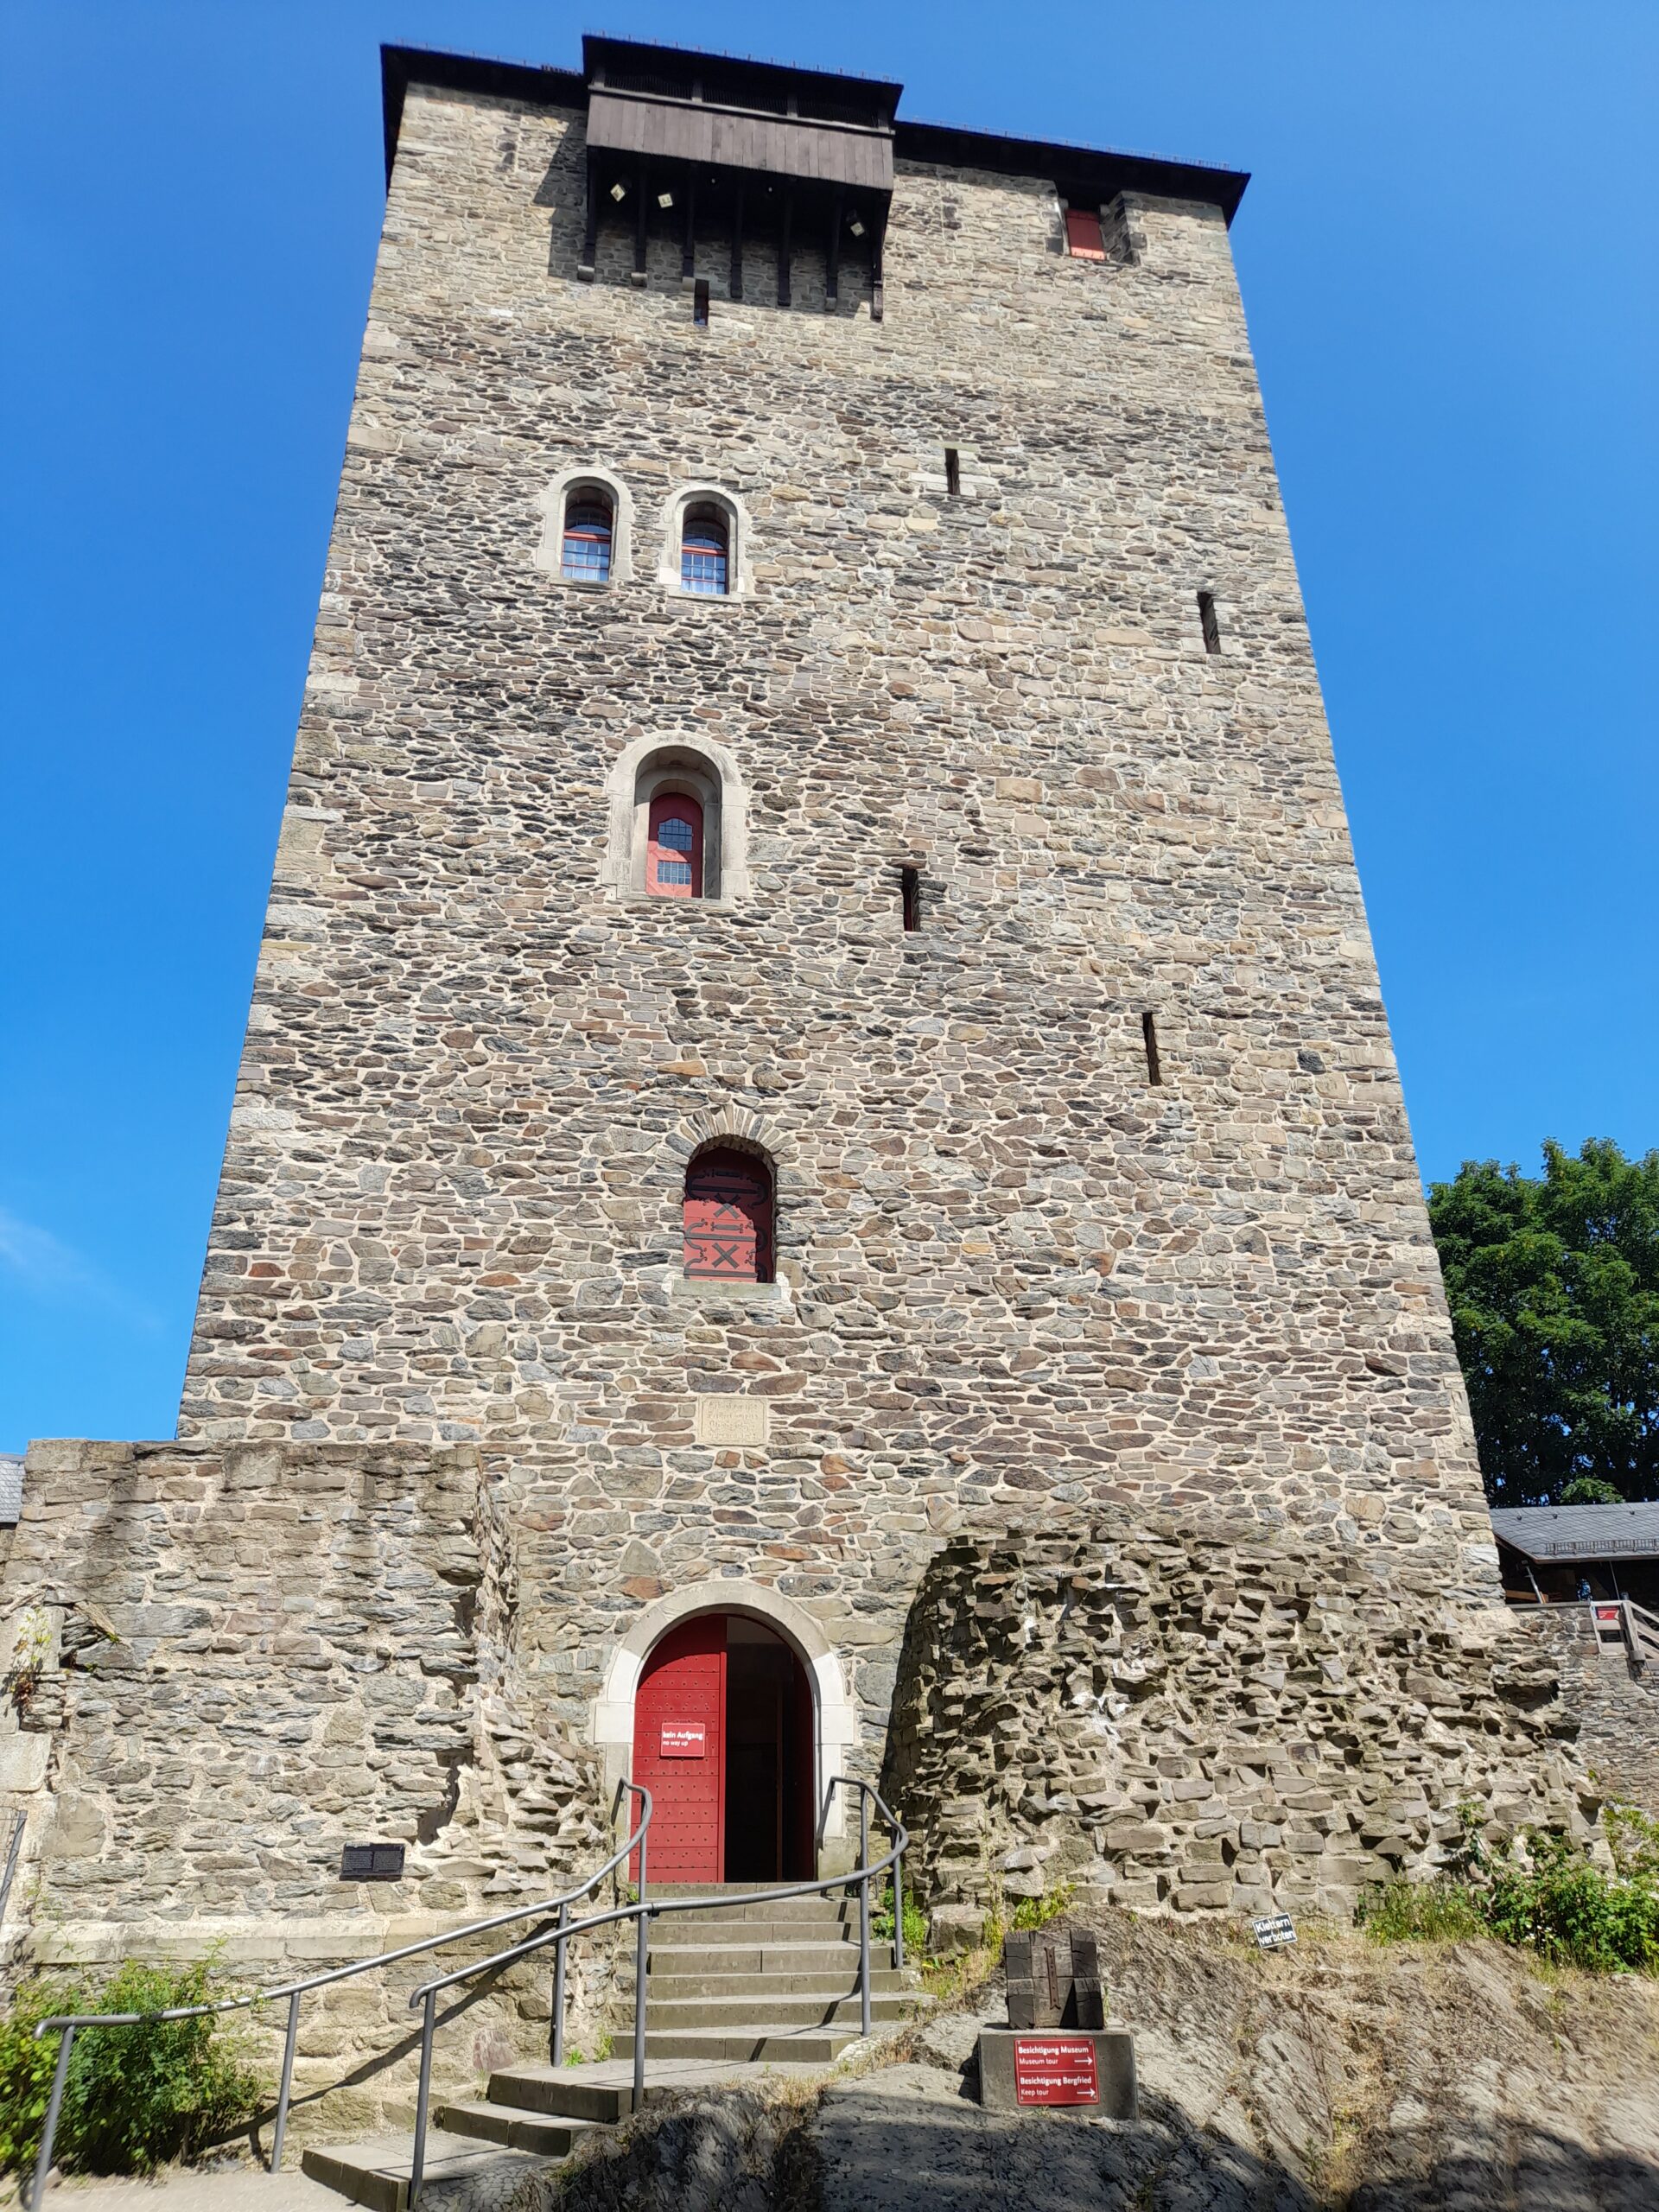 Burg Castle in Solingen